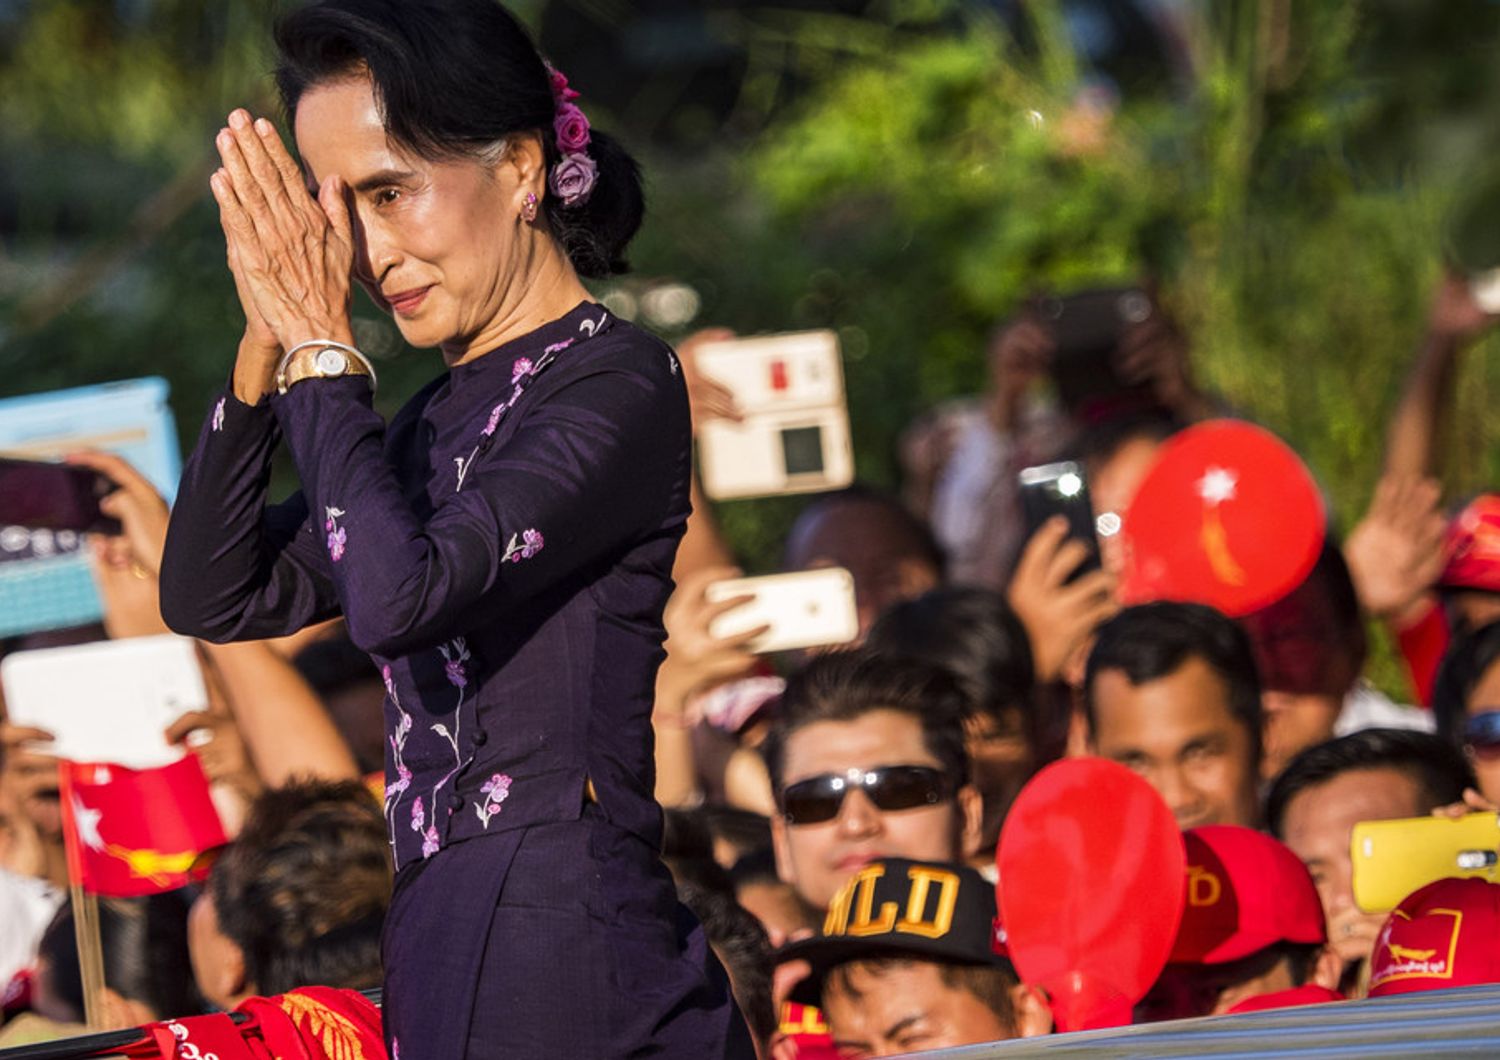 &nbsp;Aung San Suu Kyi doventa il primo ministro di Myanmar dopo le prime elezioni libere in 25 anni nel paese asiatico da sempre sottoposto a regime militare